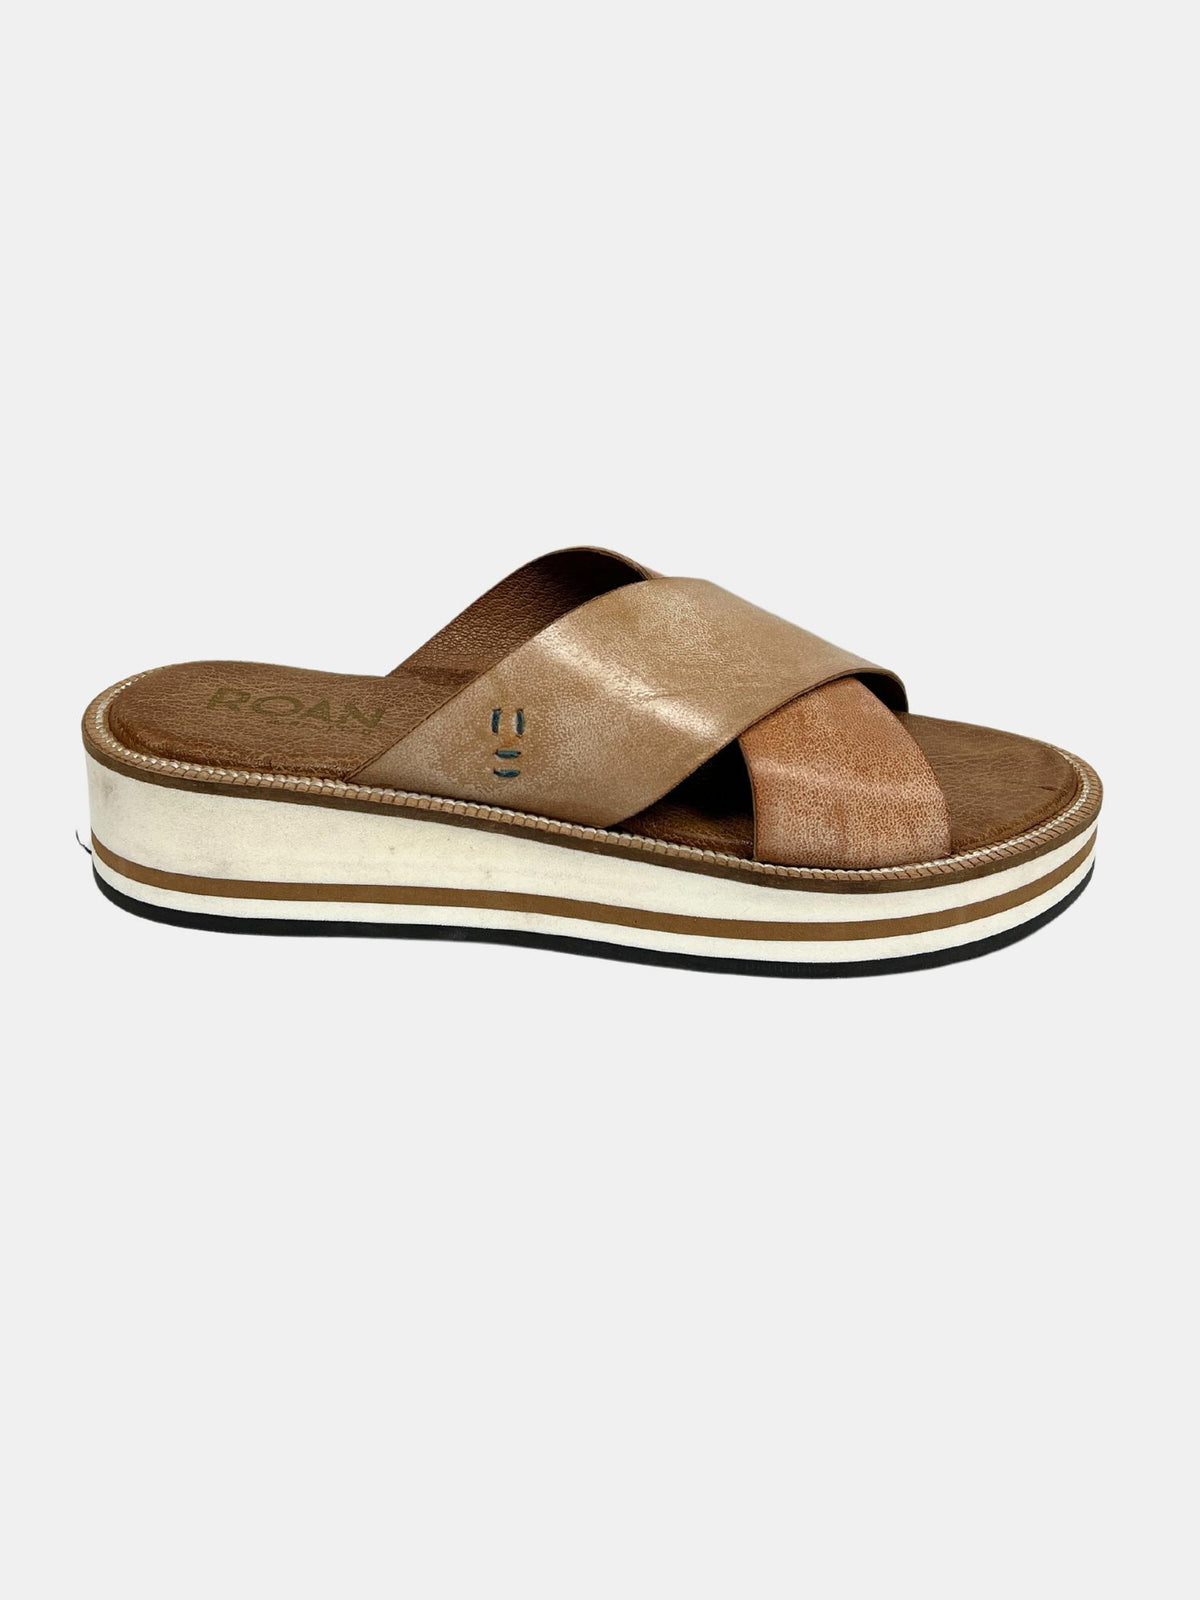 roan shout cross strap sandals in pecan white-side 